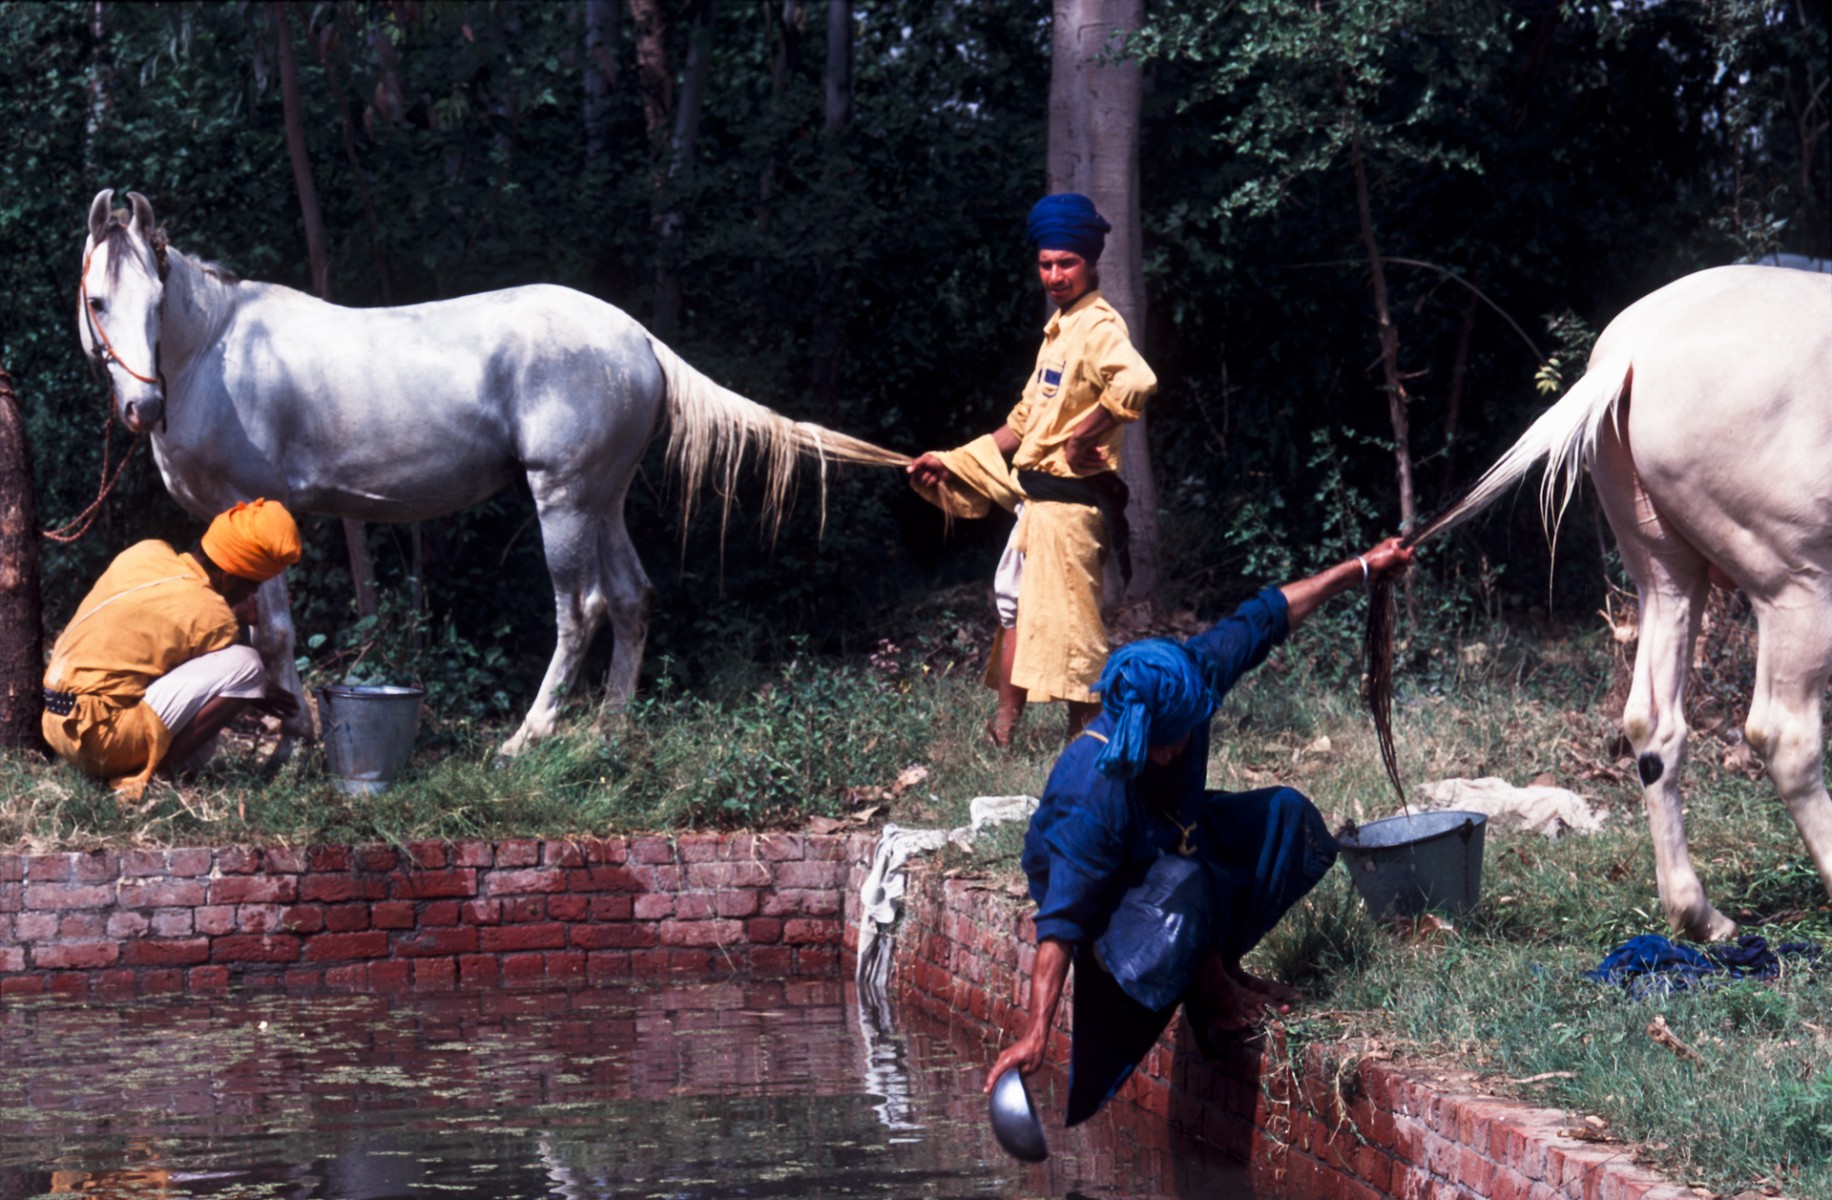 Nihangs washing horses, Sangrur